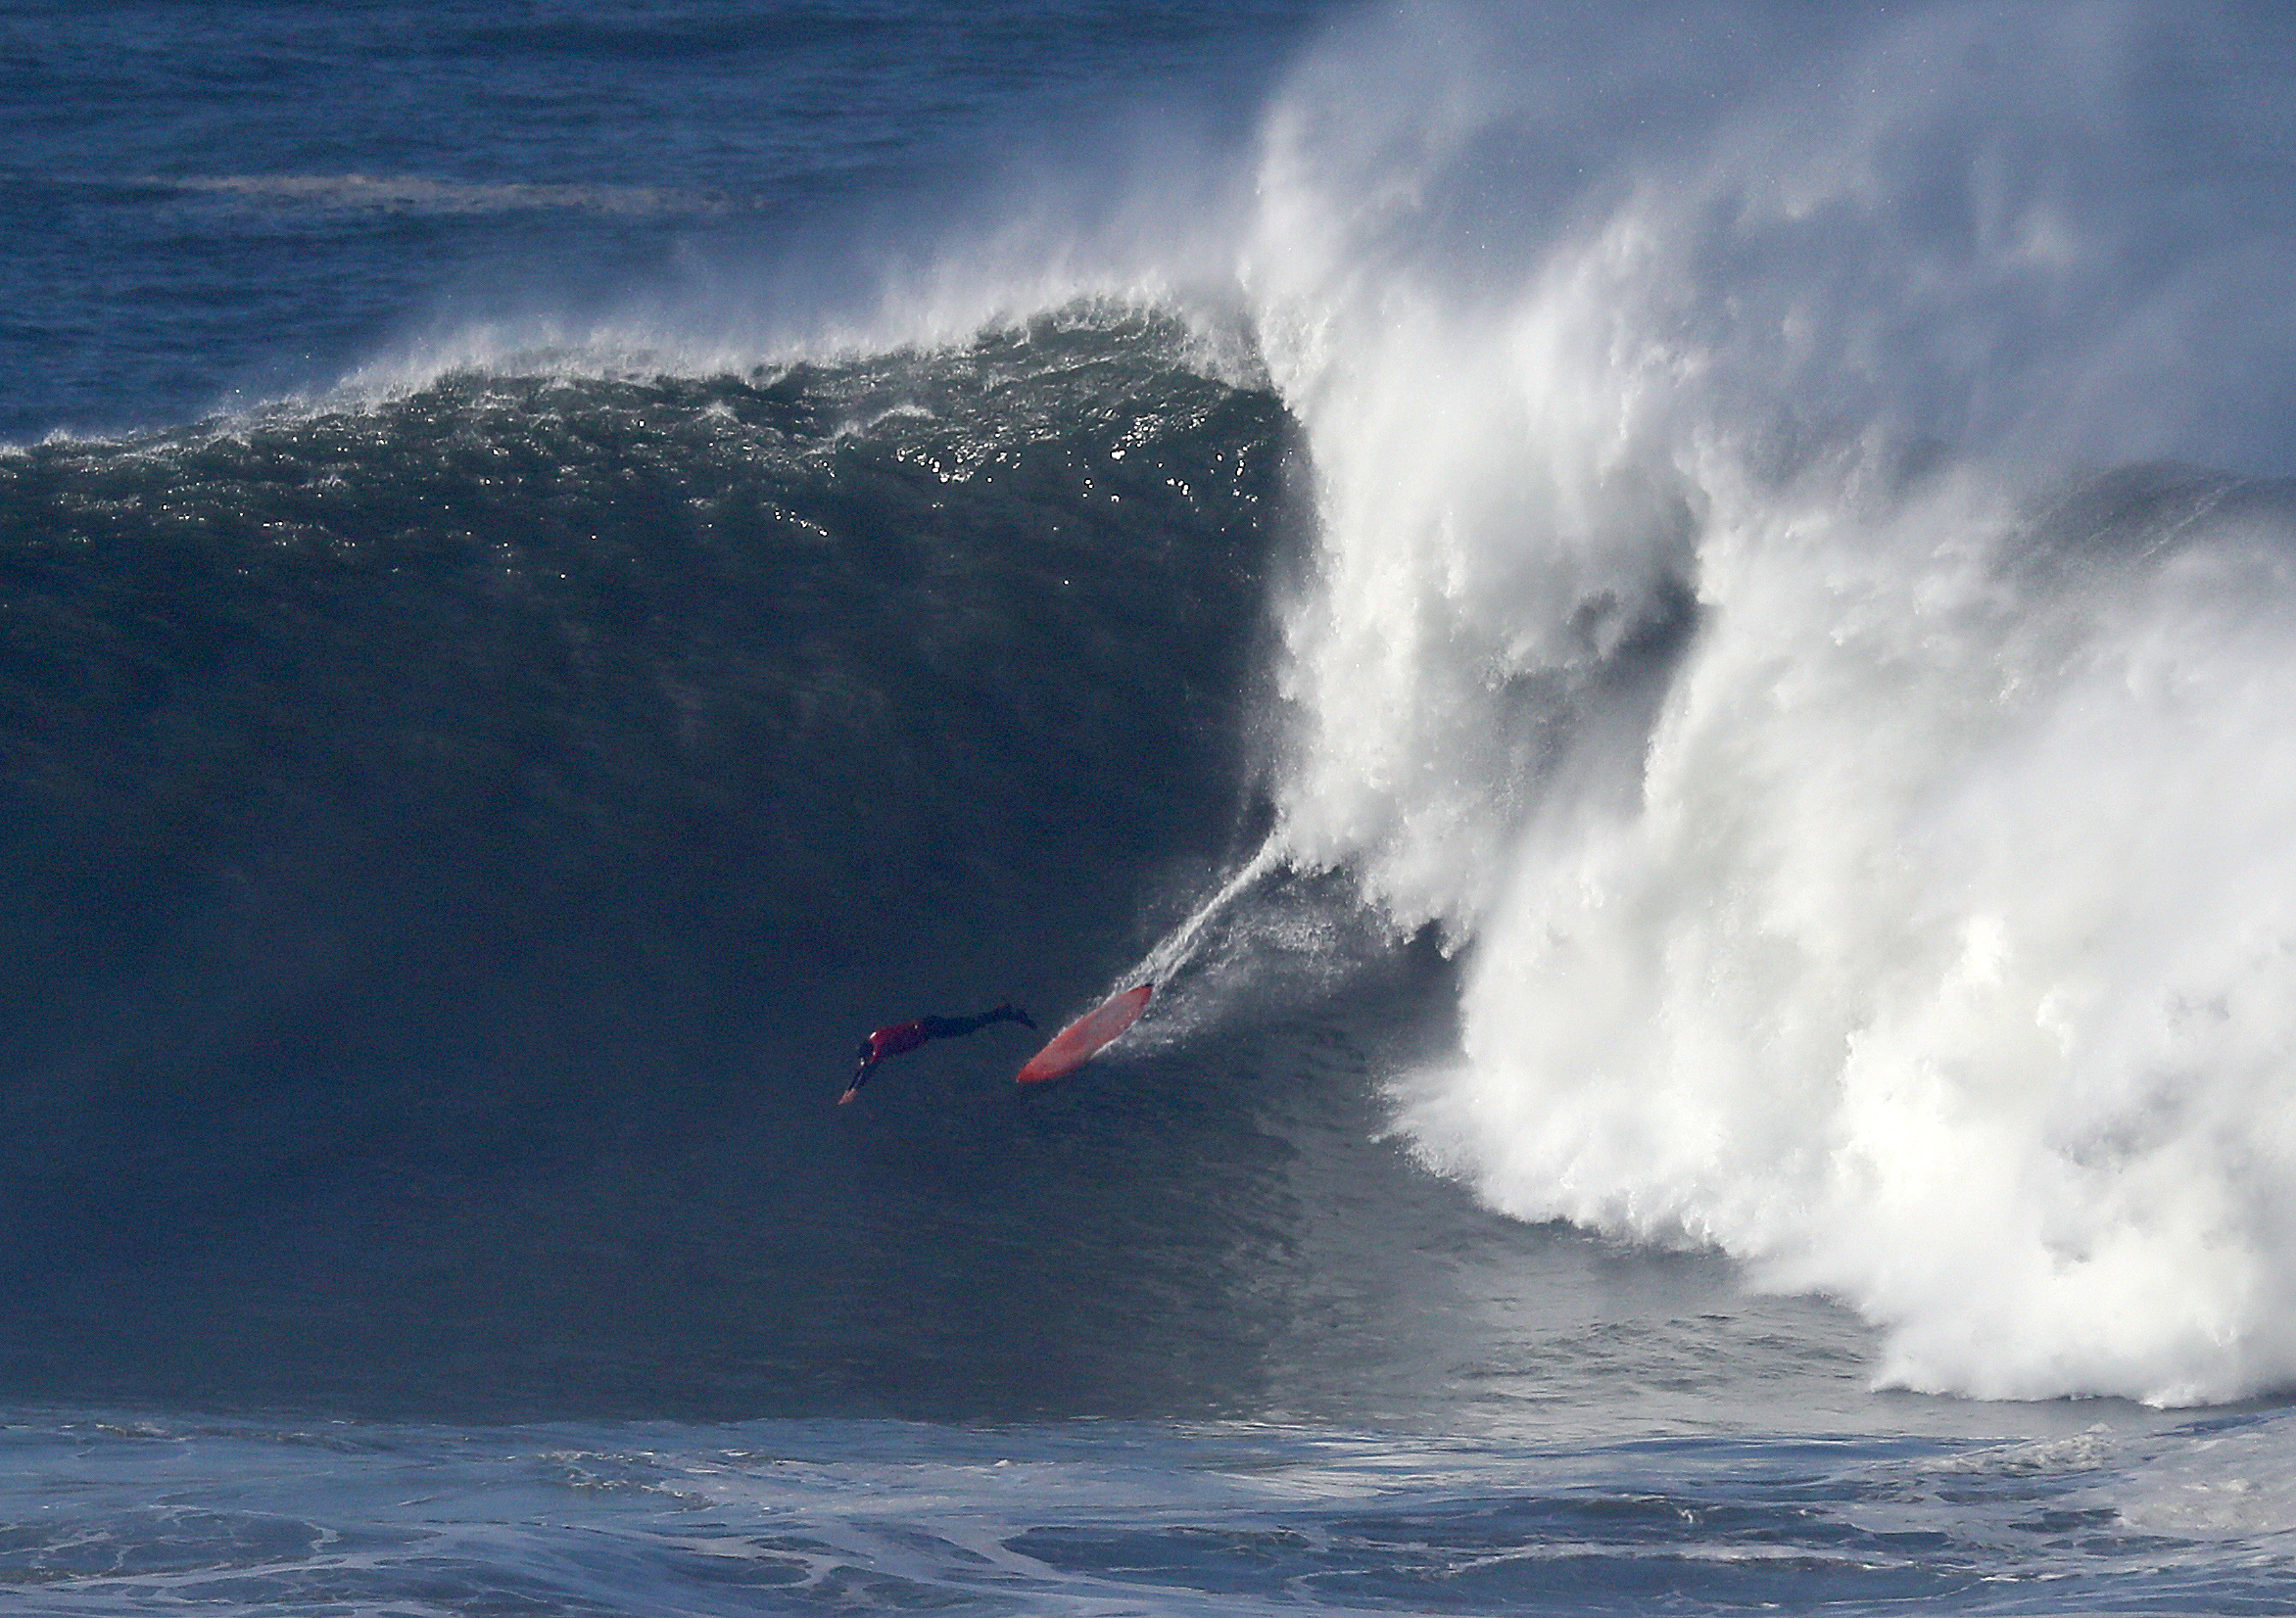 surfer rides big wave